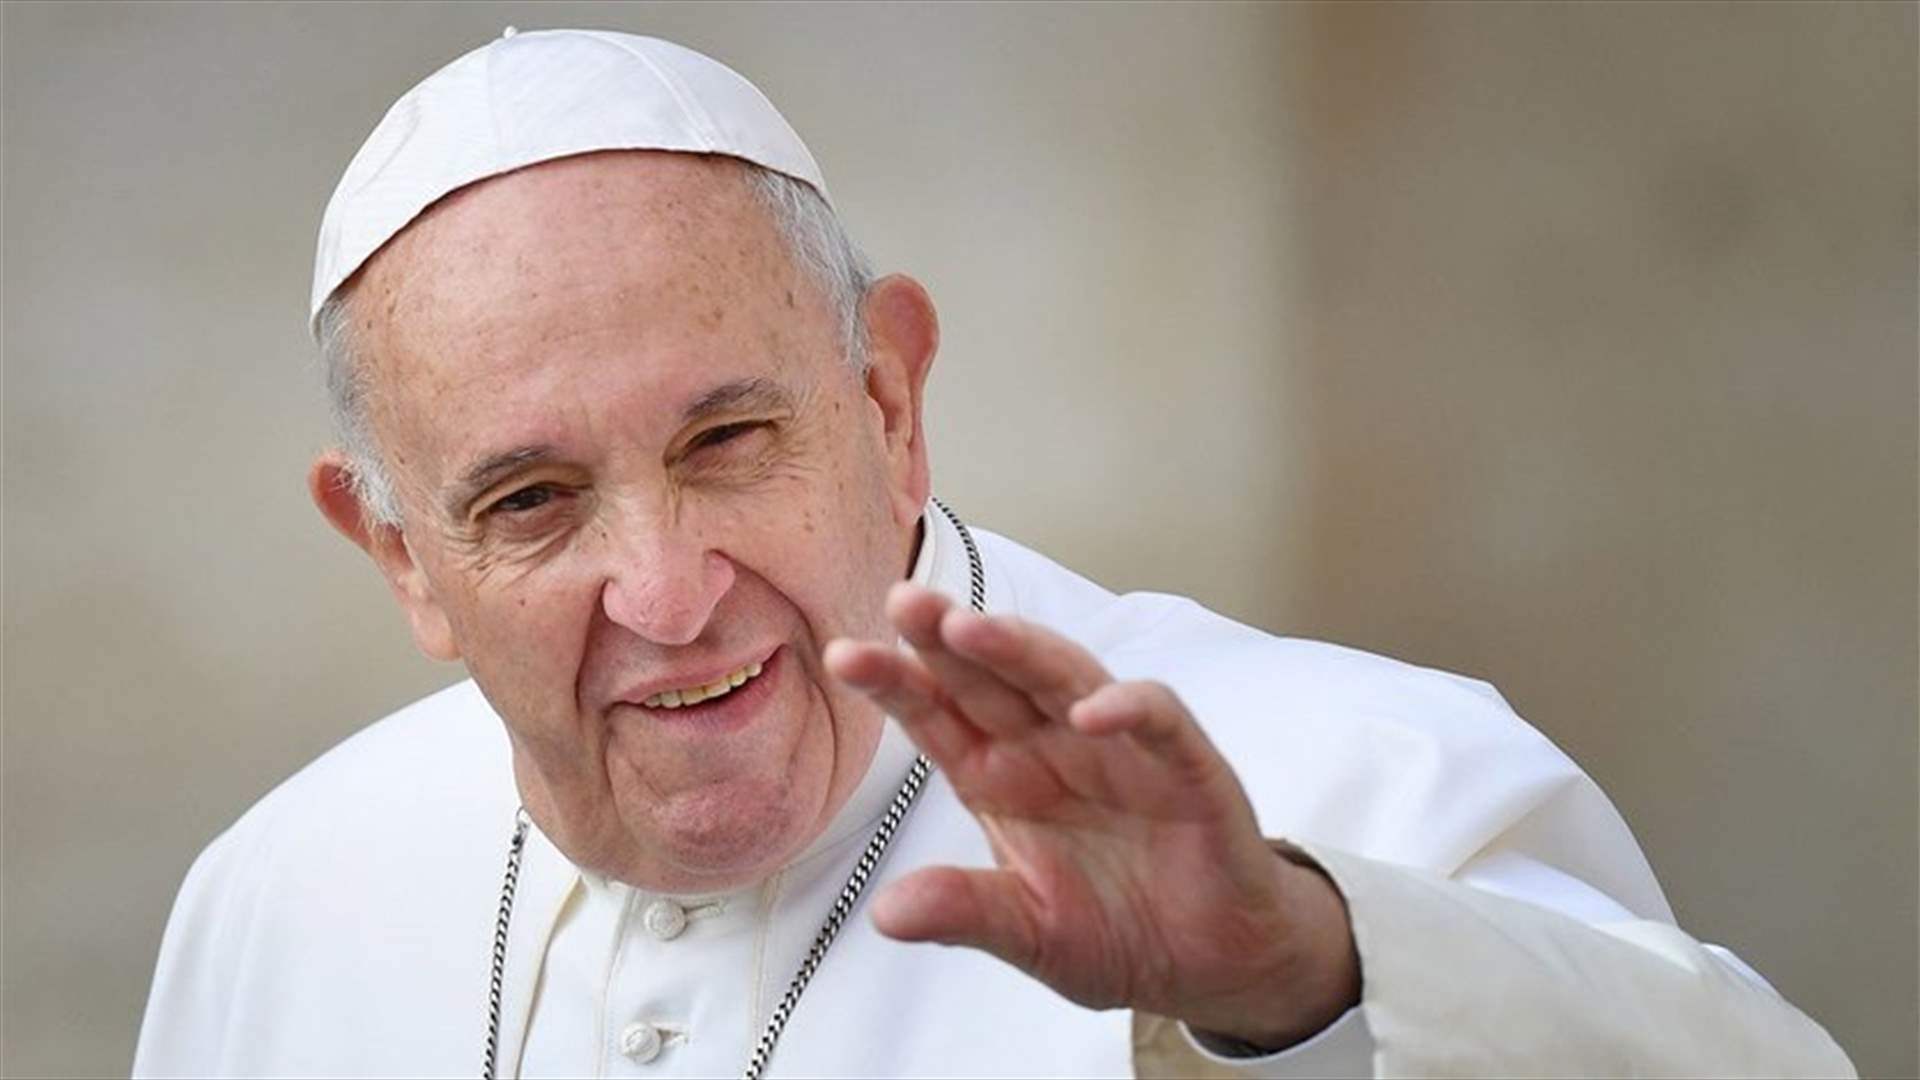 بعد دخوله المستشفى... إلغاء جدول أعمال البابا فرنسيس ليوم الخميس